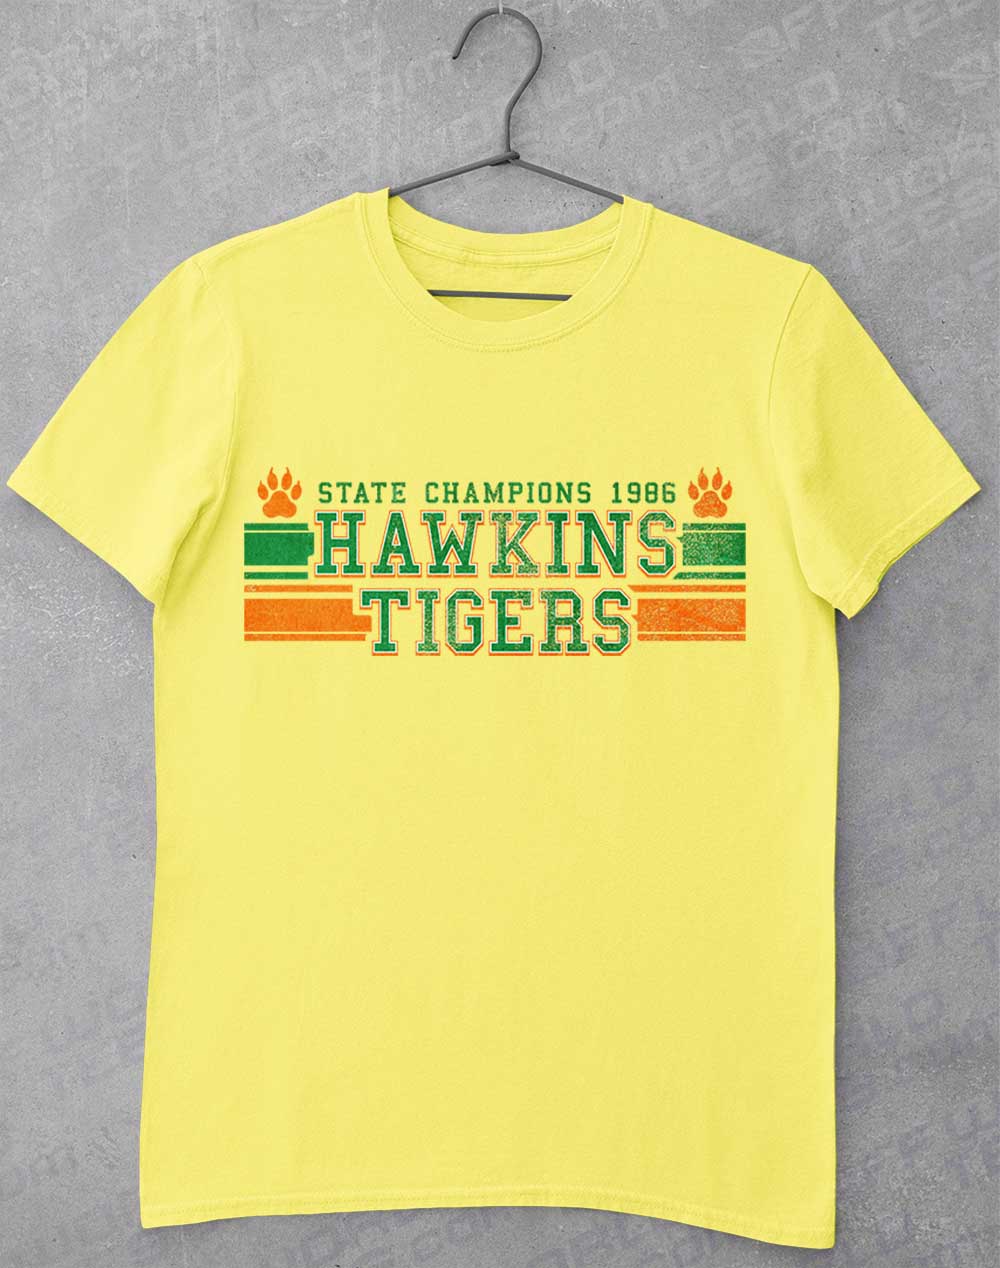 Cornsilk - Hawkins Tigers State Champs 1986 T-Shirt